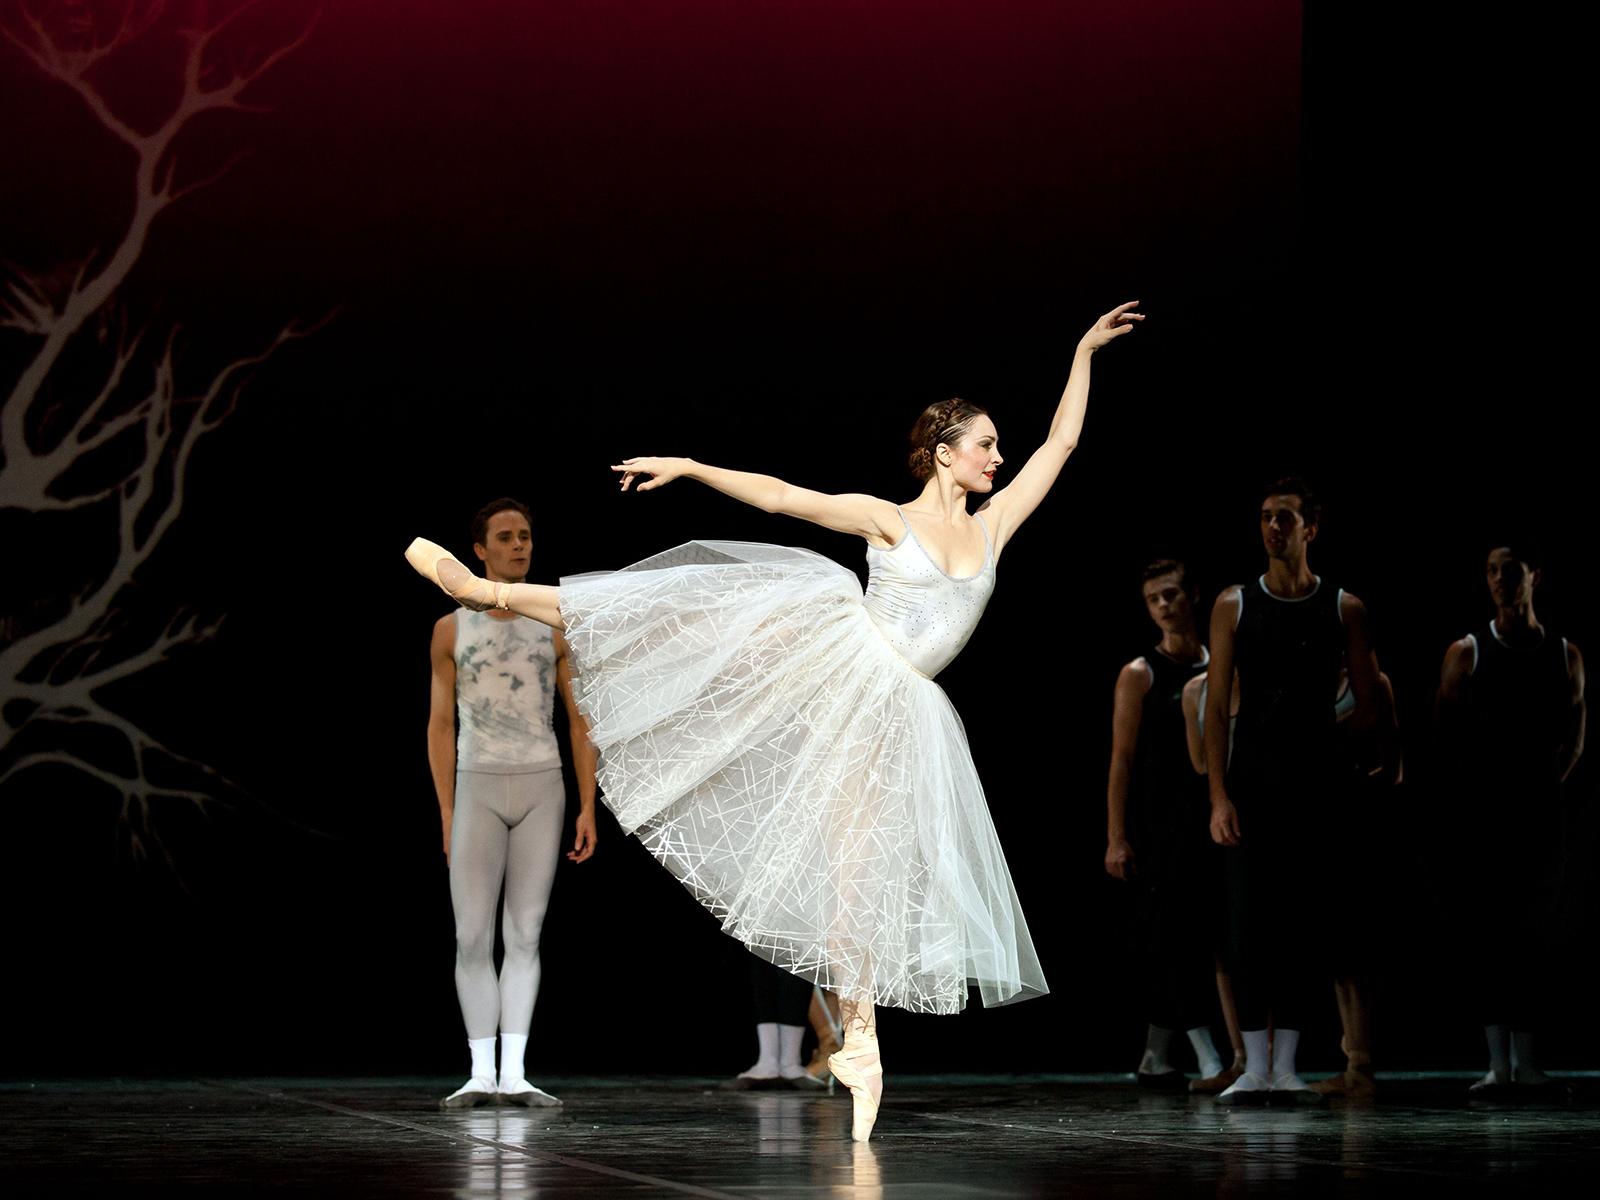 Amy Watson - ved Den Kgl. Ballet, interview